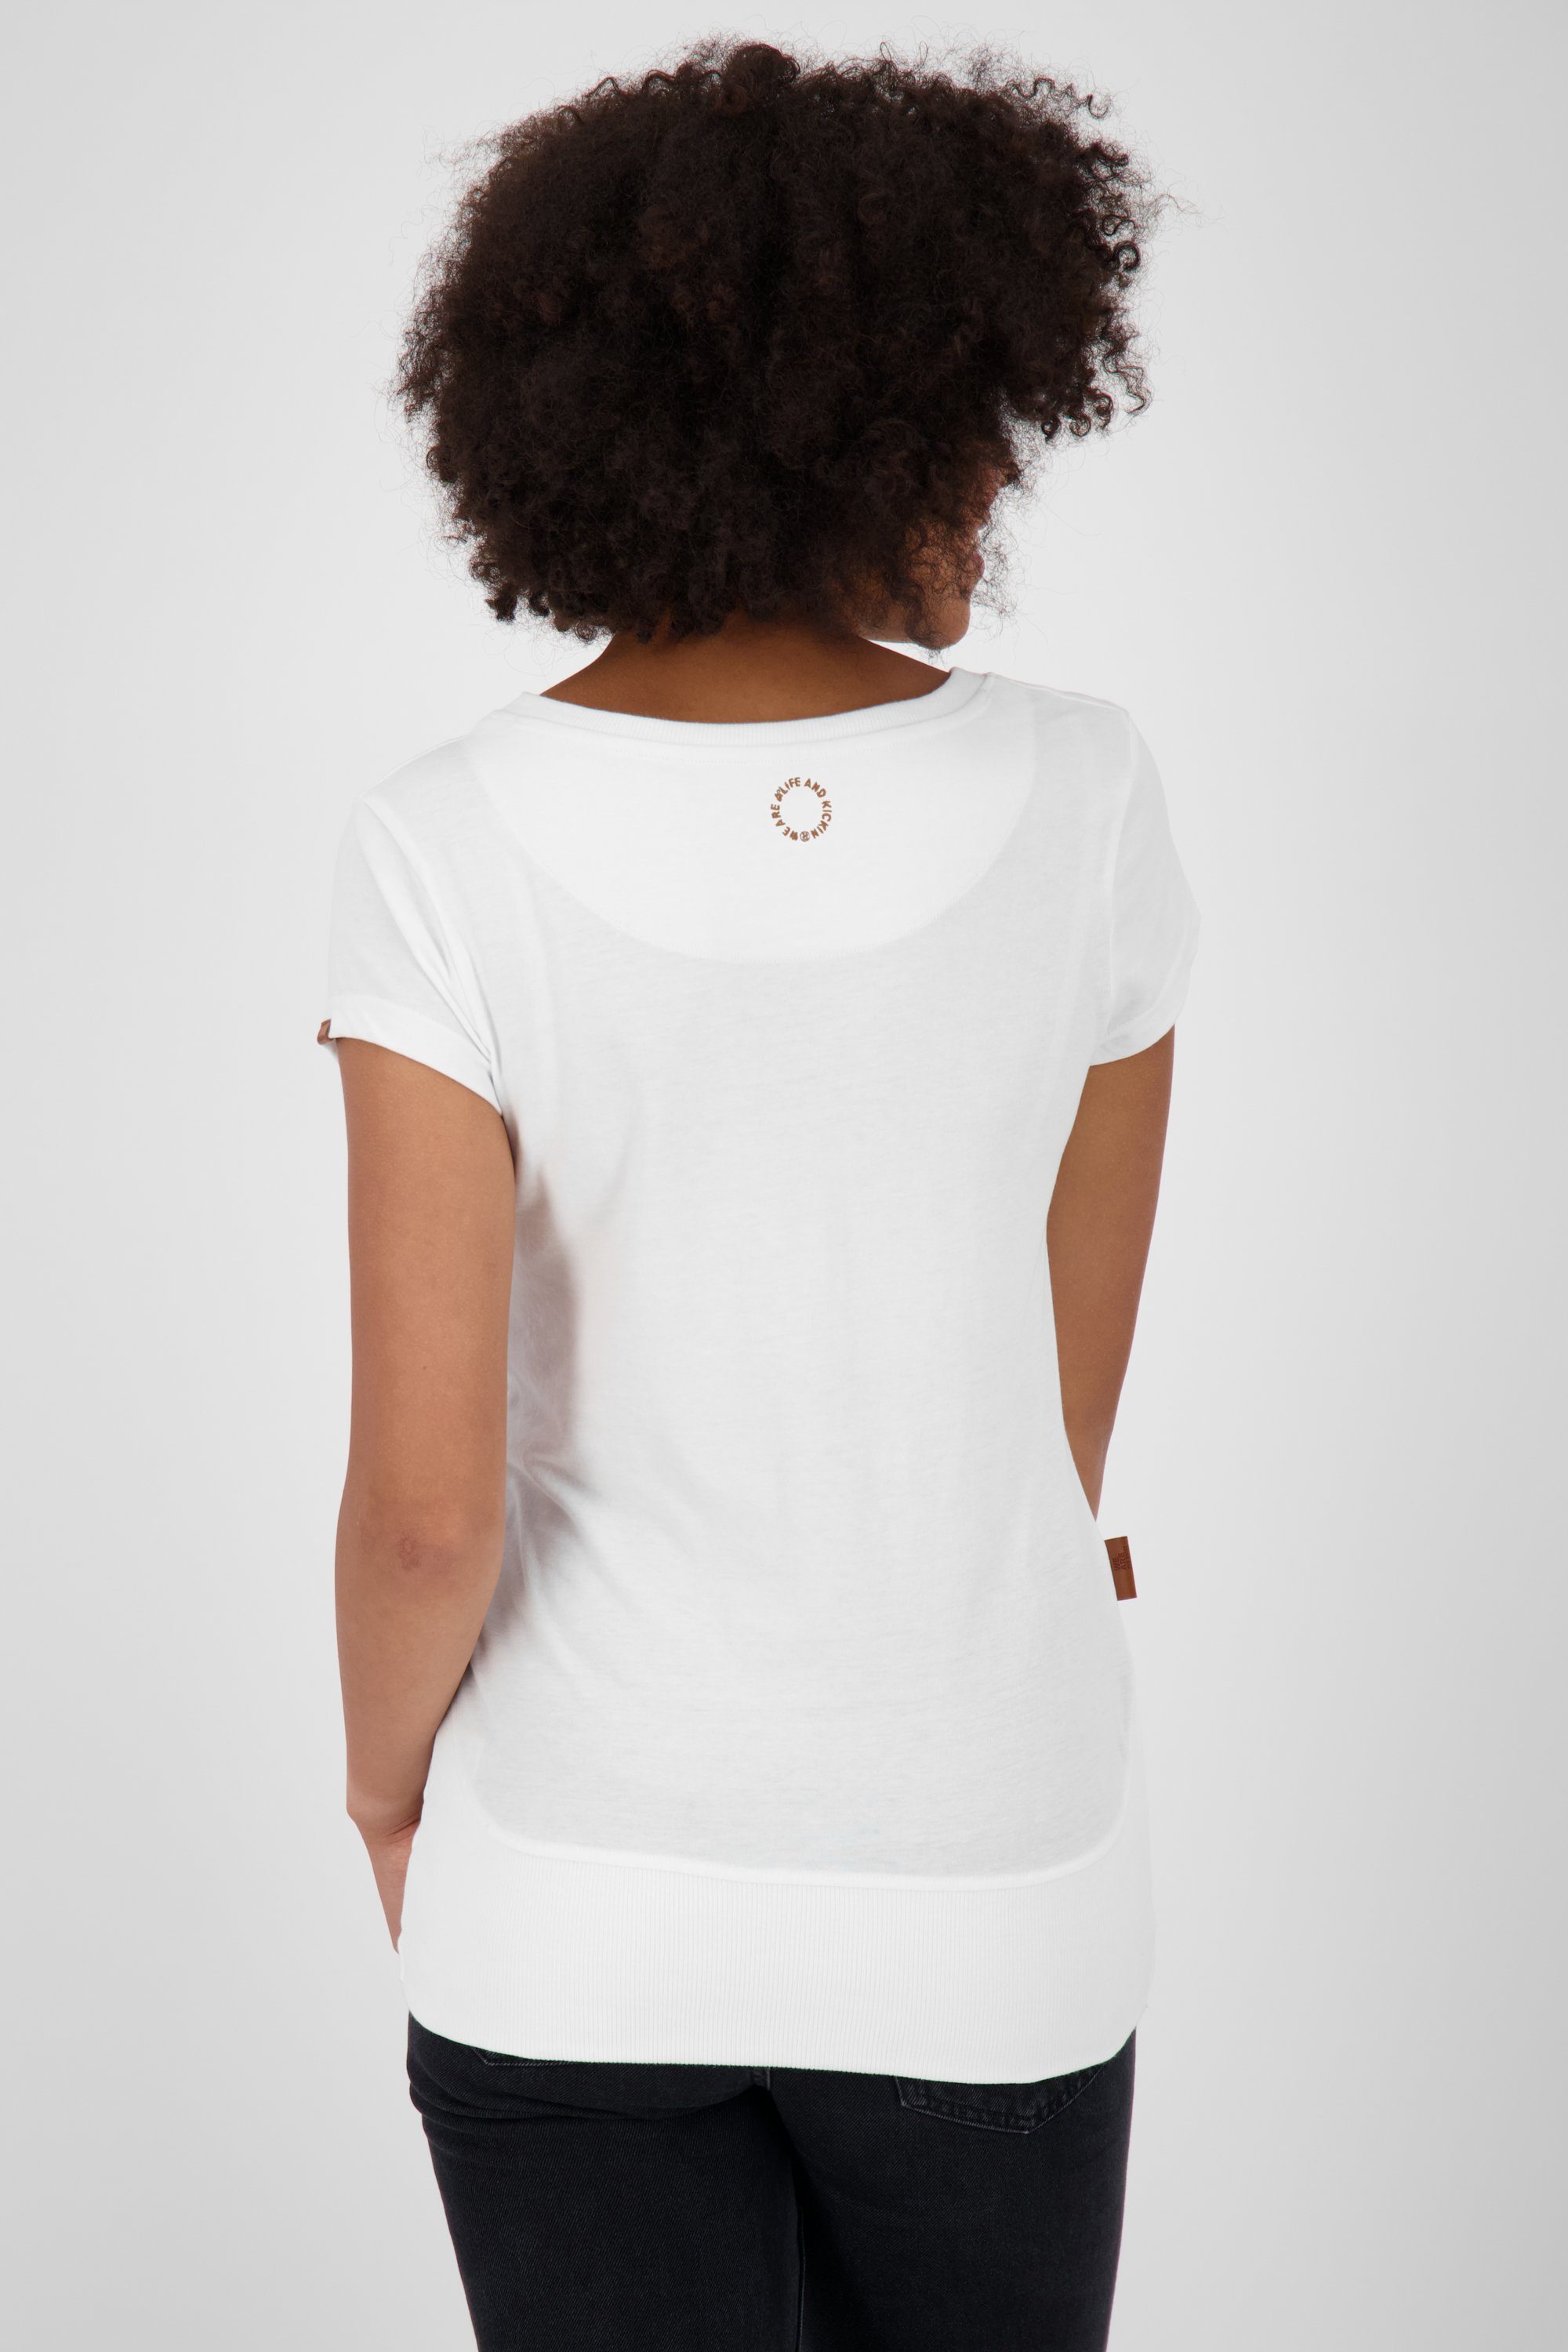 A T-Shirt & T-Shirt Shirt white Damen CocoAK Kickin Alife